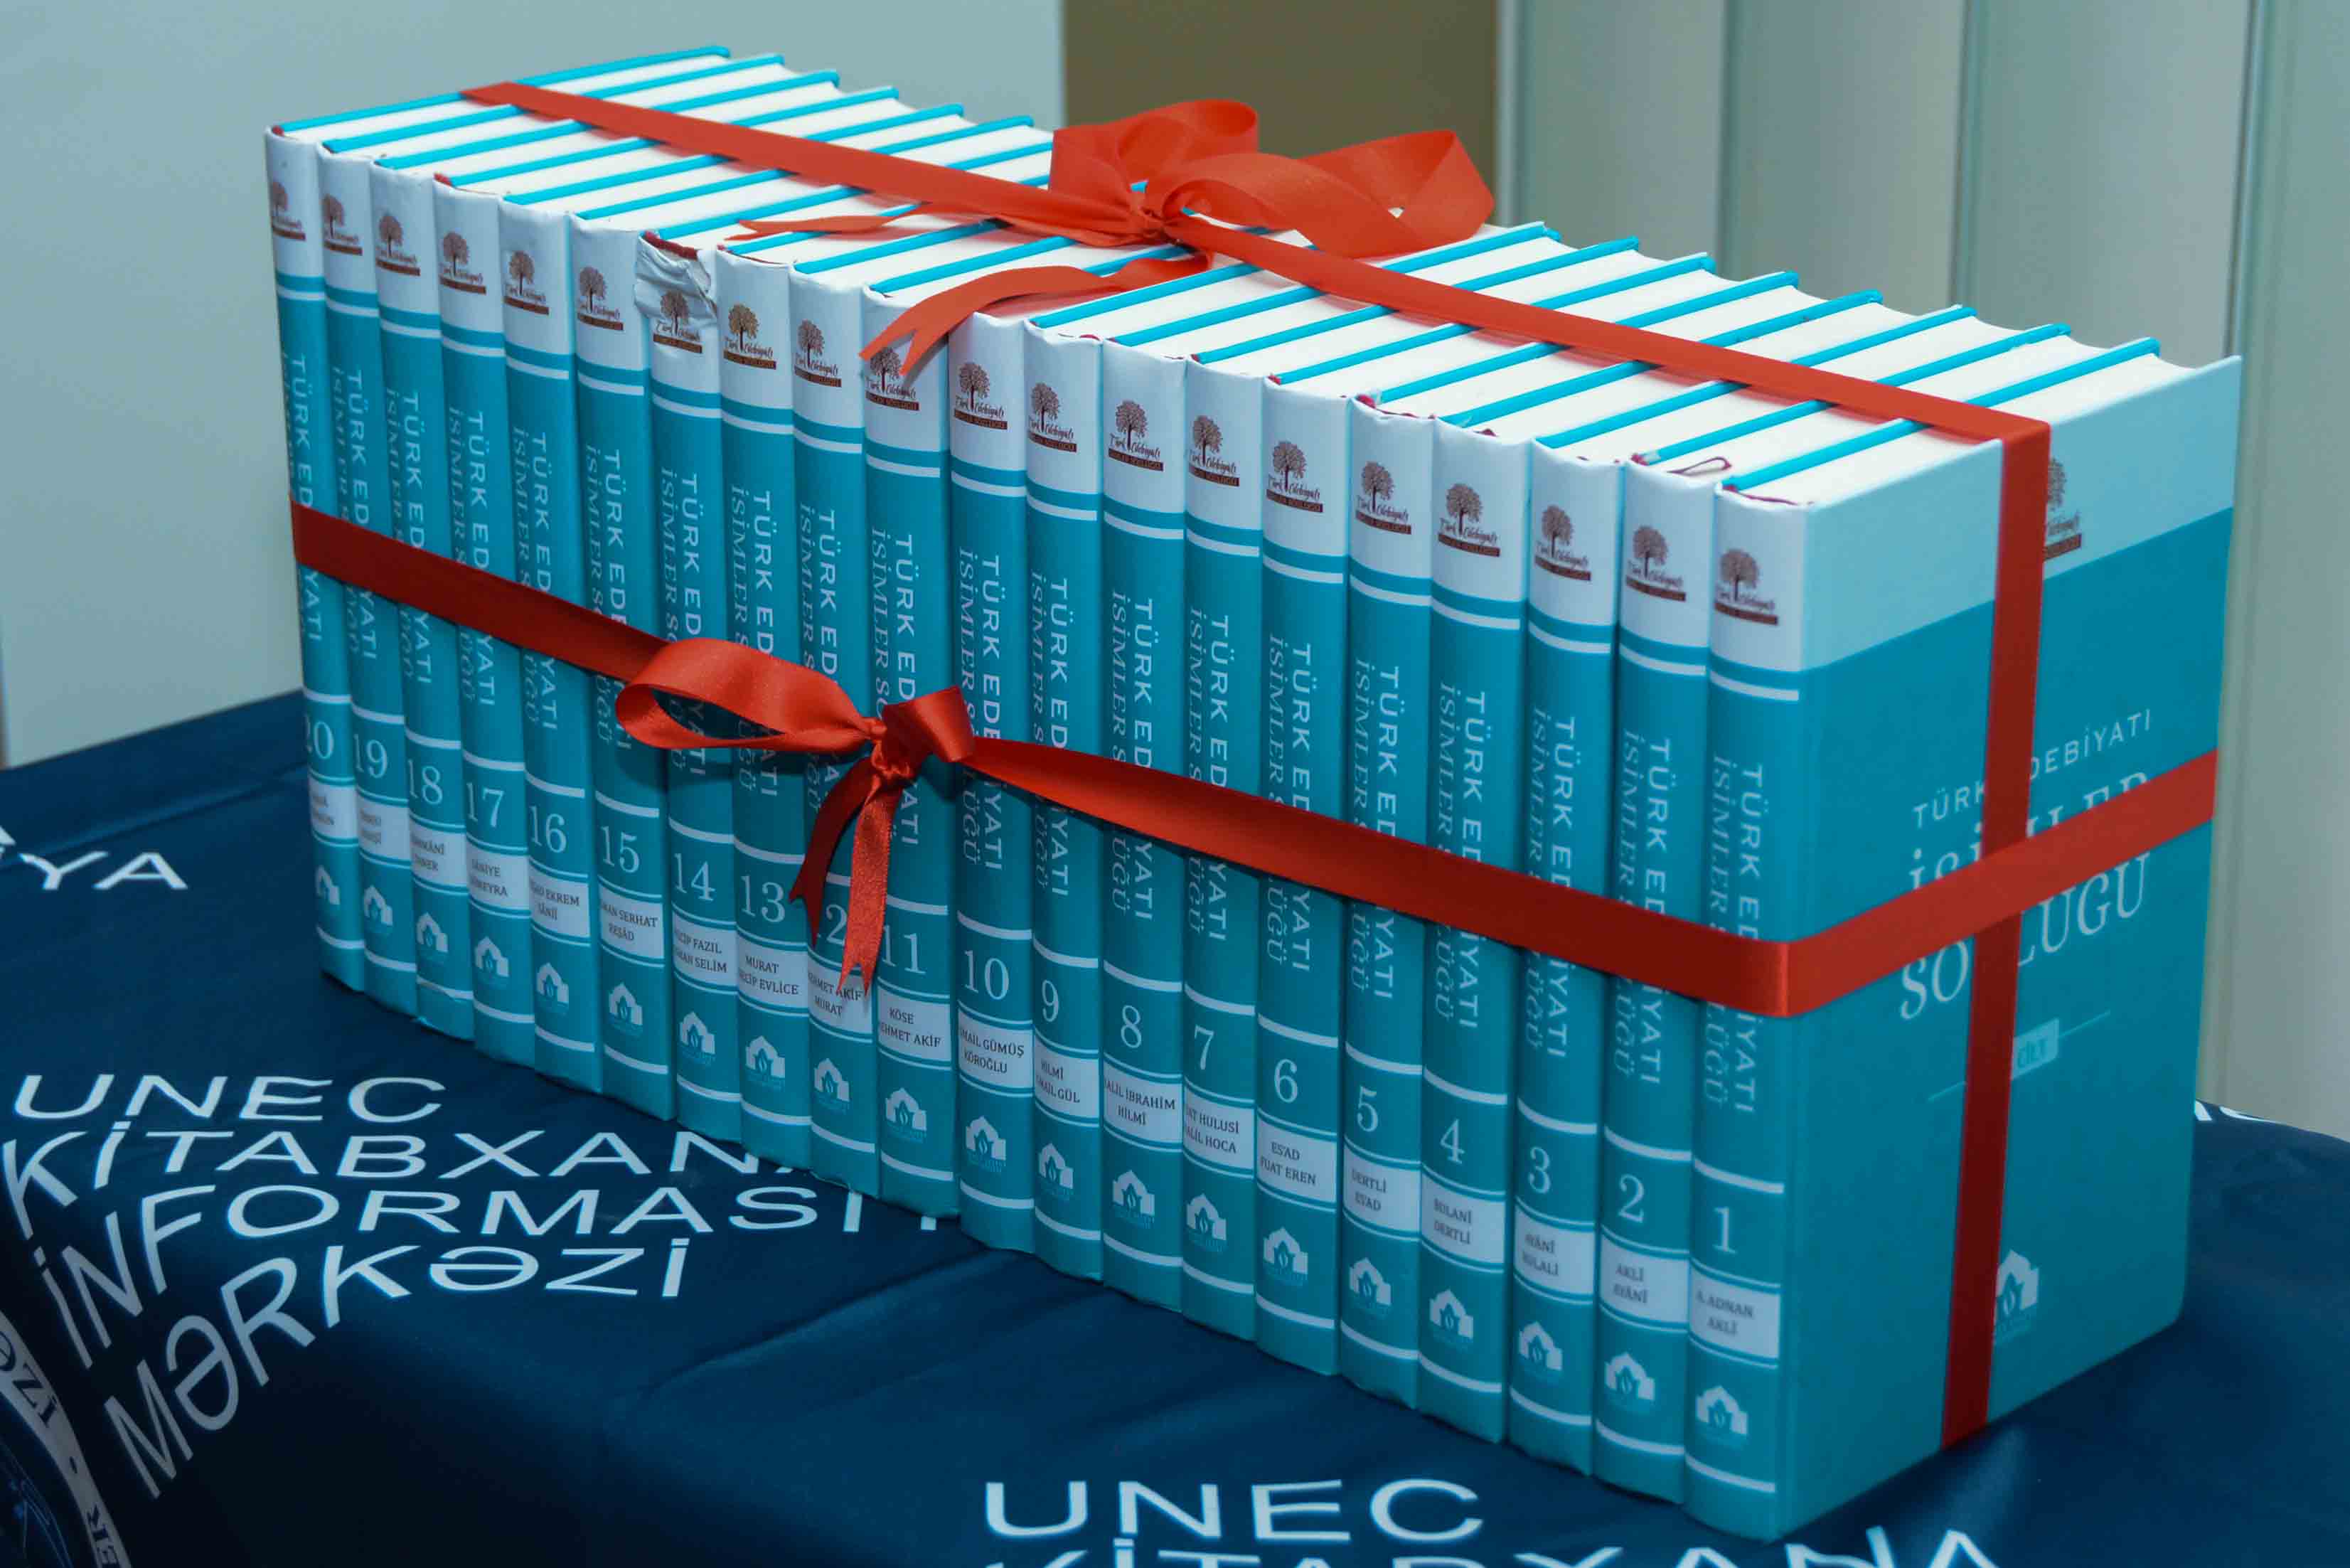 UNEC-də 20 cildlik yeni kitabın təqdimatı oldu - FOTOLAR